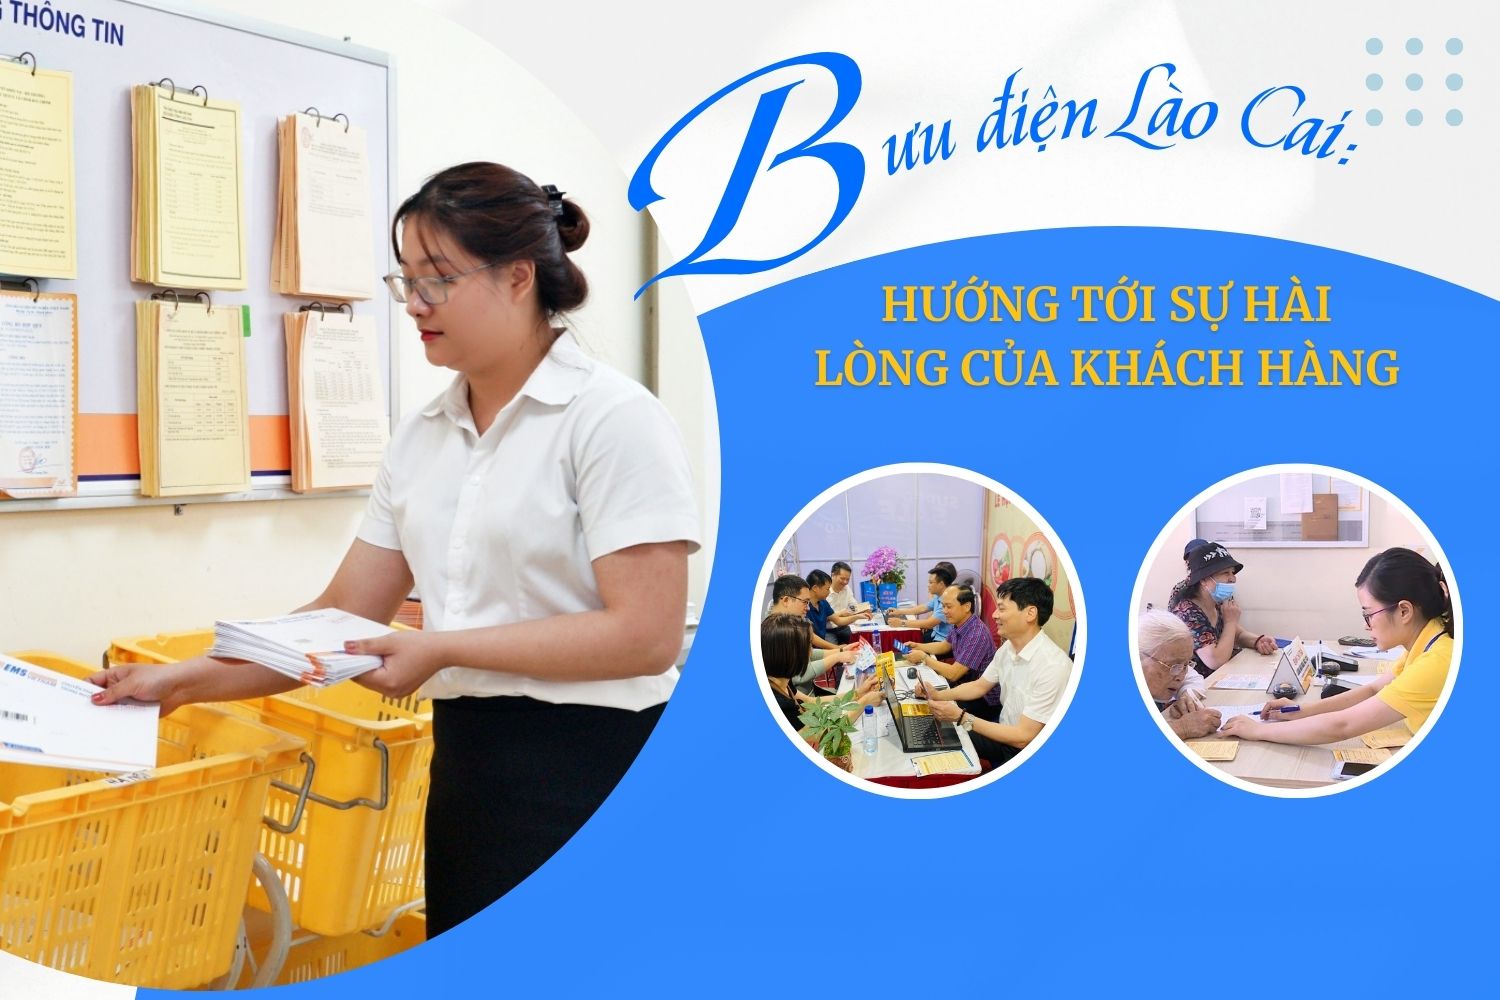 Bưu điện tỉnh Lào Cai: Hướng tới sự hài lòng của khách hàng